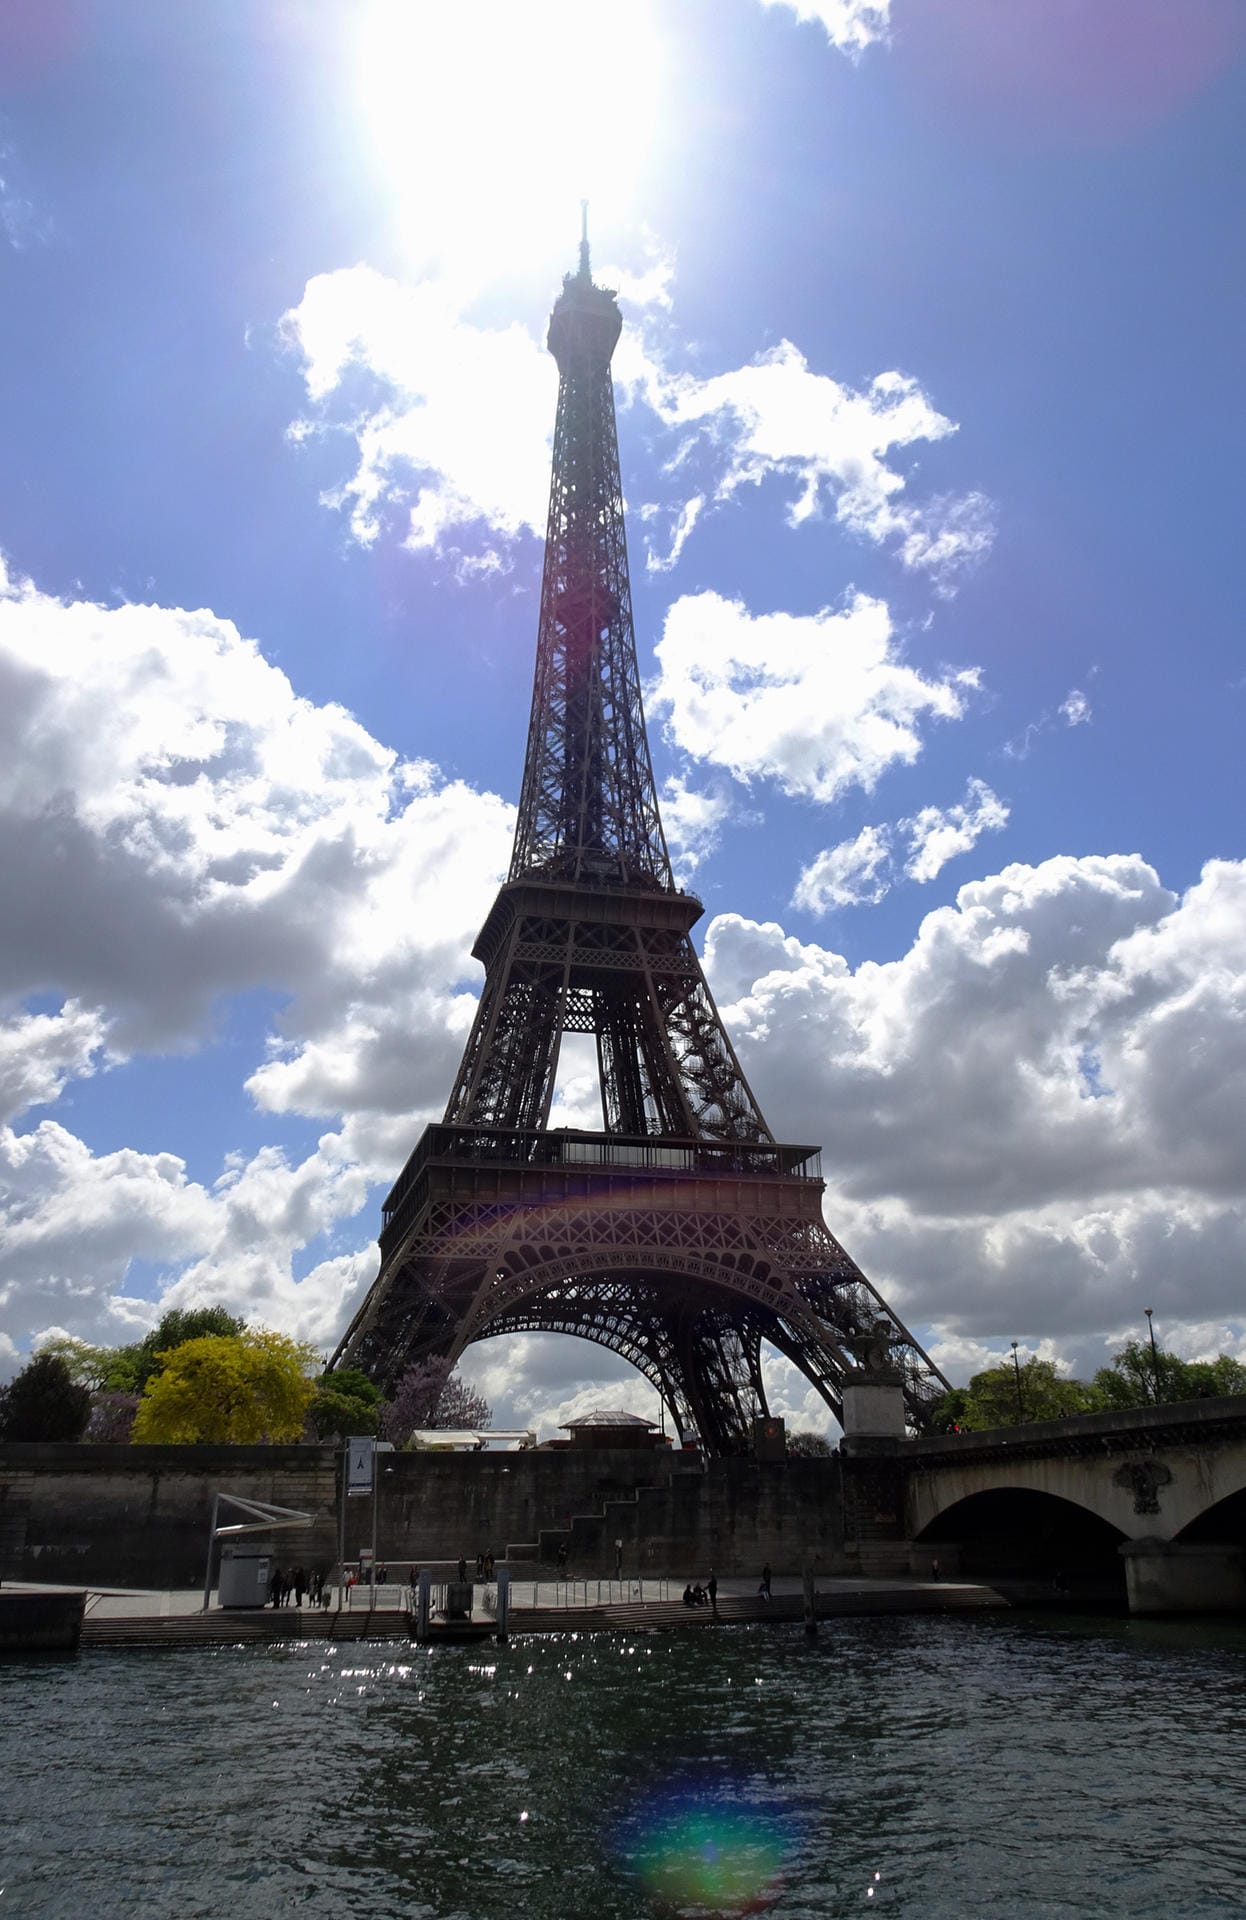 Wochenendtrip zum Eiffelturm: Damit das nicht zum Stress ausartet, sollten Reisende einiges beachten.